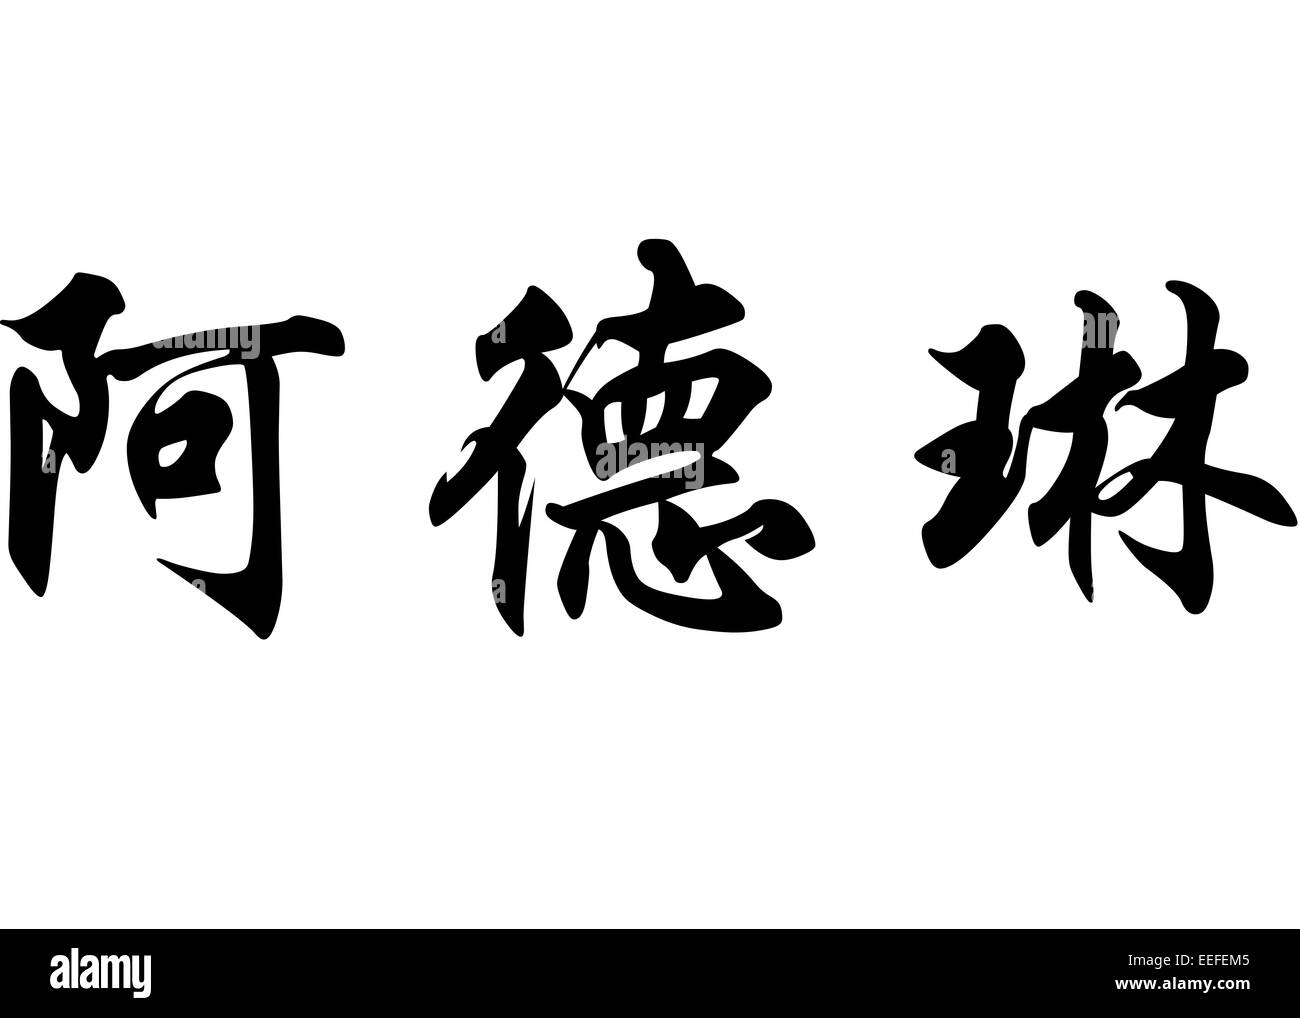 Englischer name Adeline in chinesischen Kanji Kalligraphie Zeichen oder  japanische Schriftzeichen Stockfotografie - Alamy